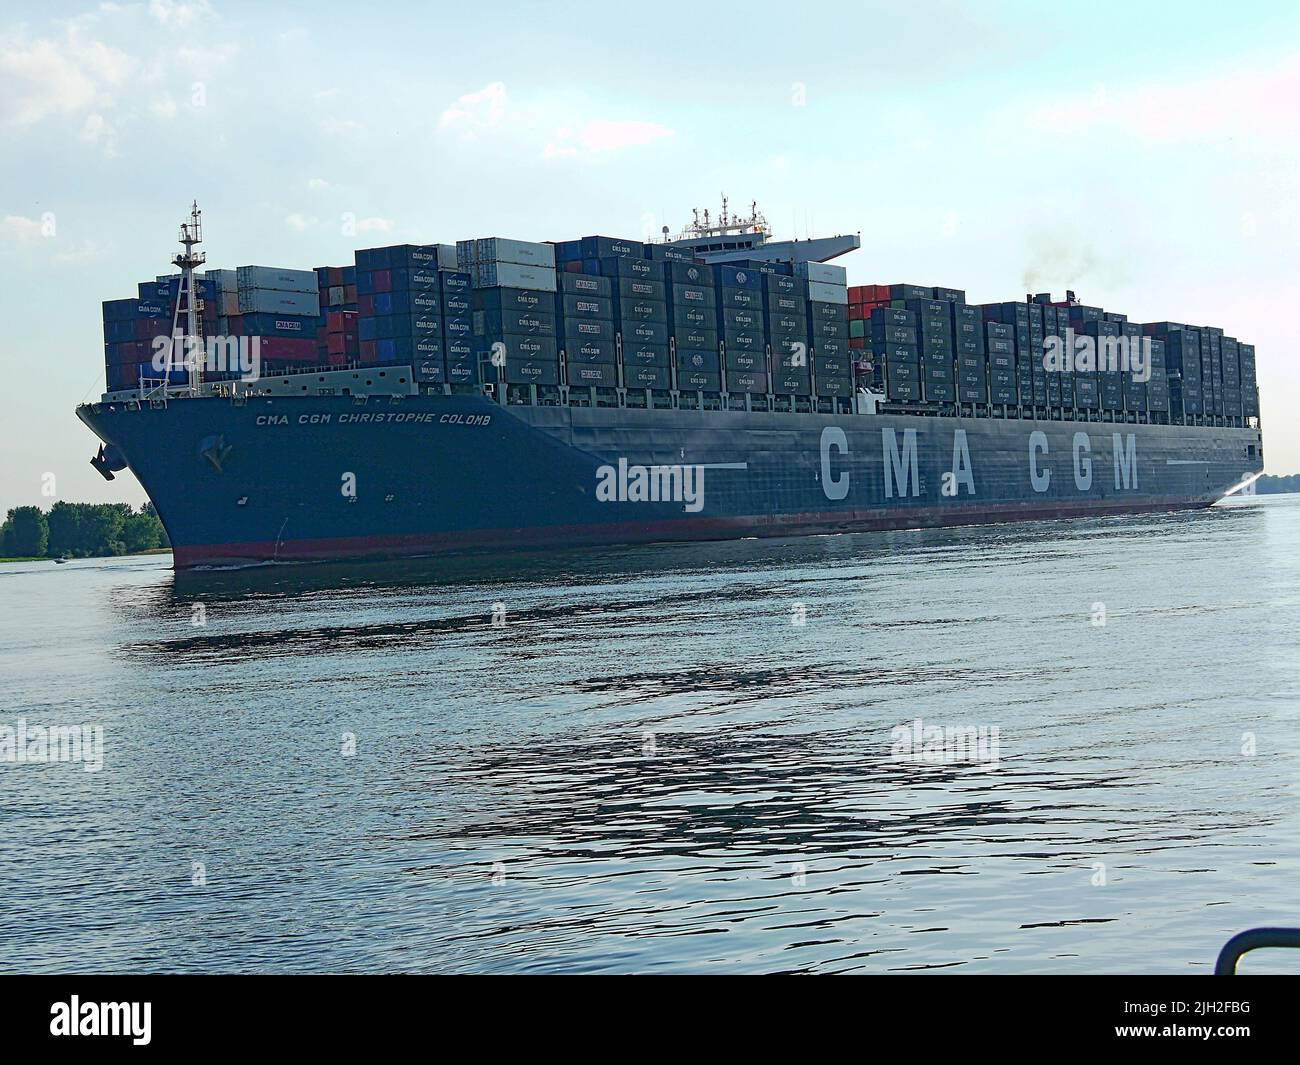 Der Container-Riese CMA CGM Christophe Colomb lief 2010 zum ersten Mal den Hamburger Hafen an. Er war seinerzeit das größte Container-Schiff und wurde von vielen Schaulustigen begrüßt. Ein Feuerlöschboot begrüßt das Schiff mit einer Wasserfontäne. Stock Photo